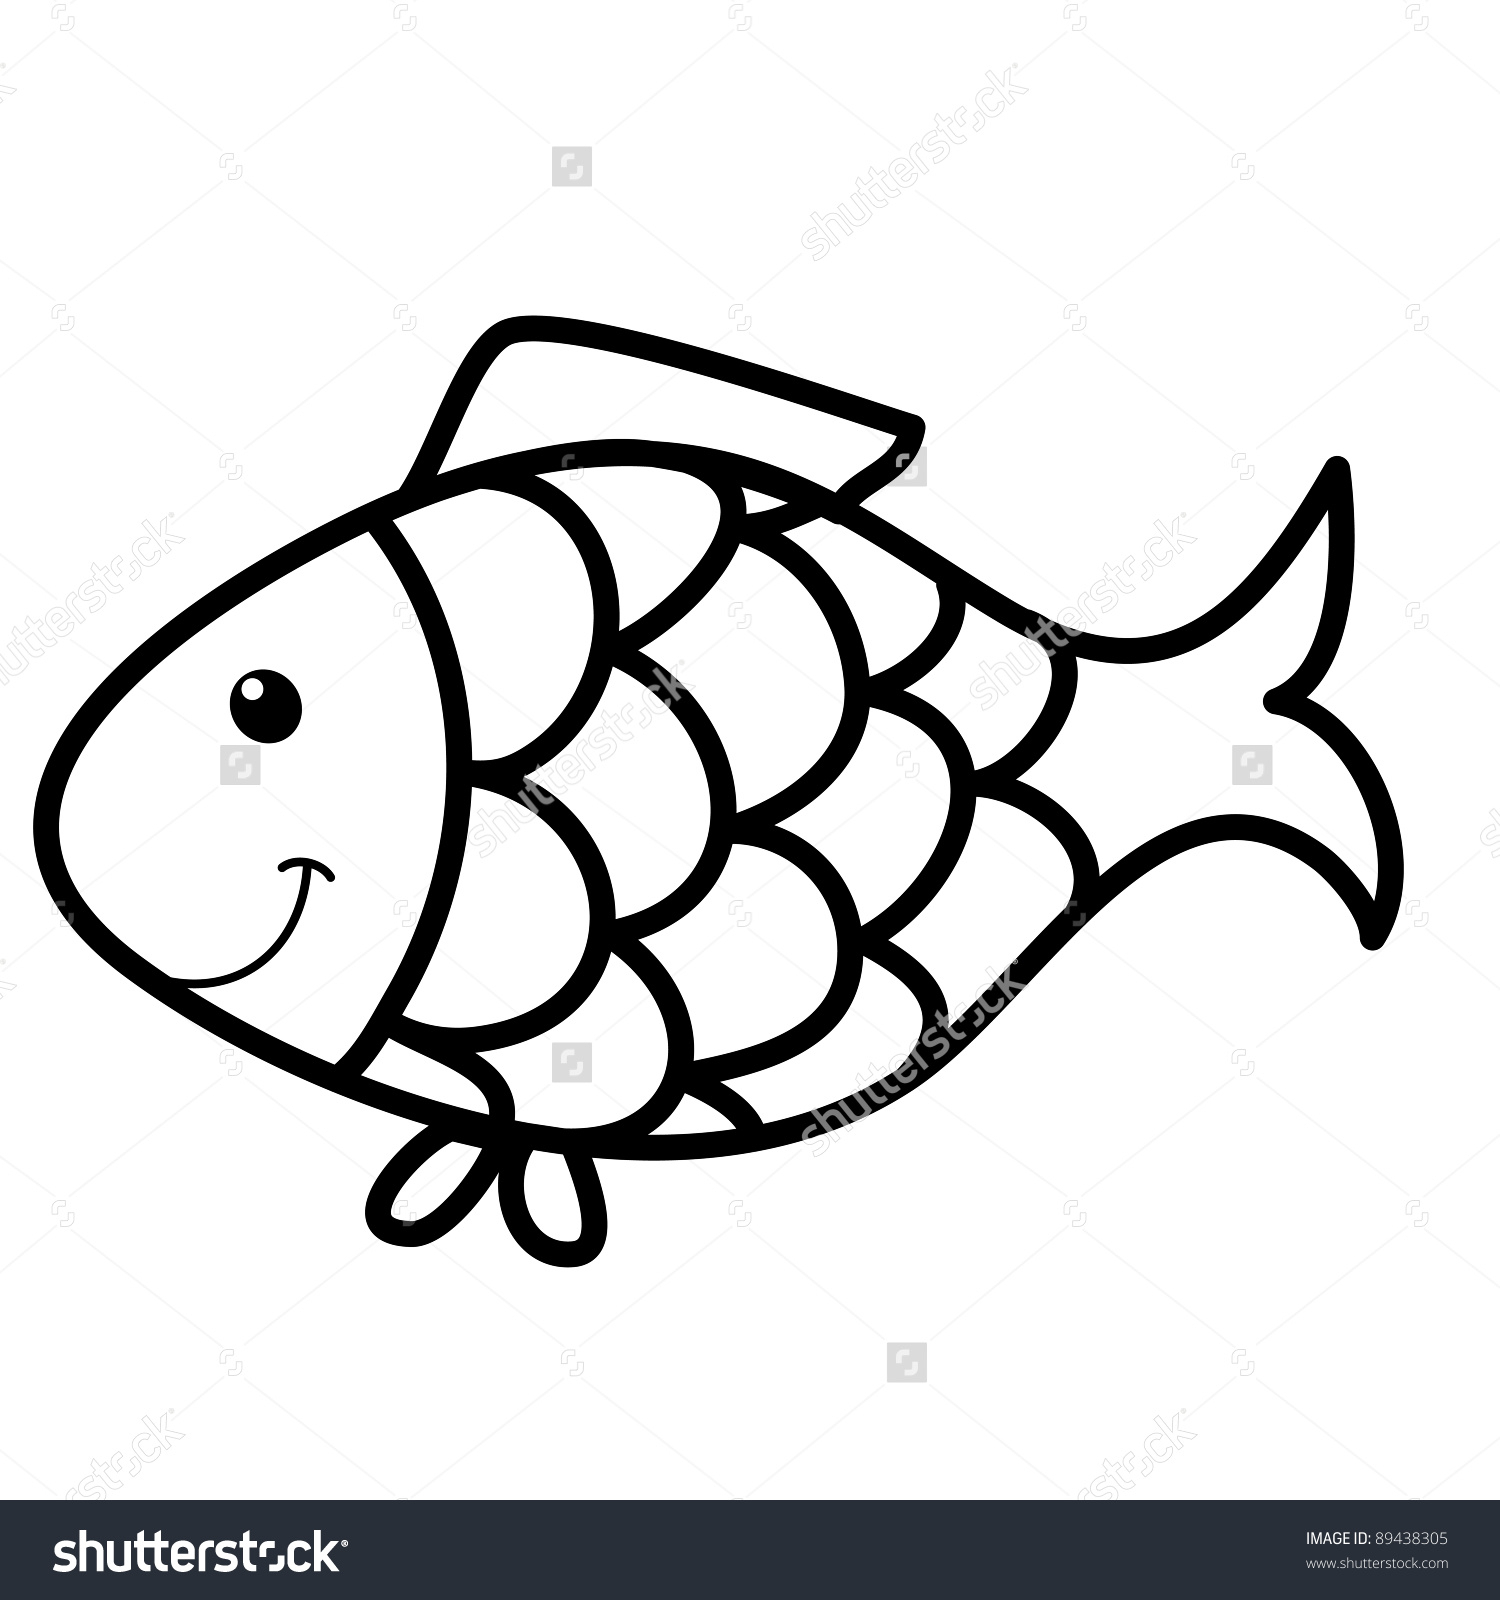 Рыбка с чешуей для раскрашивания